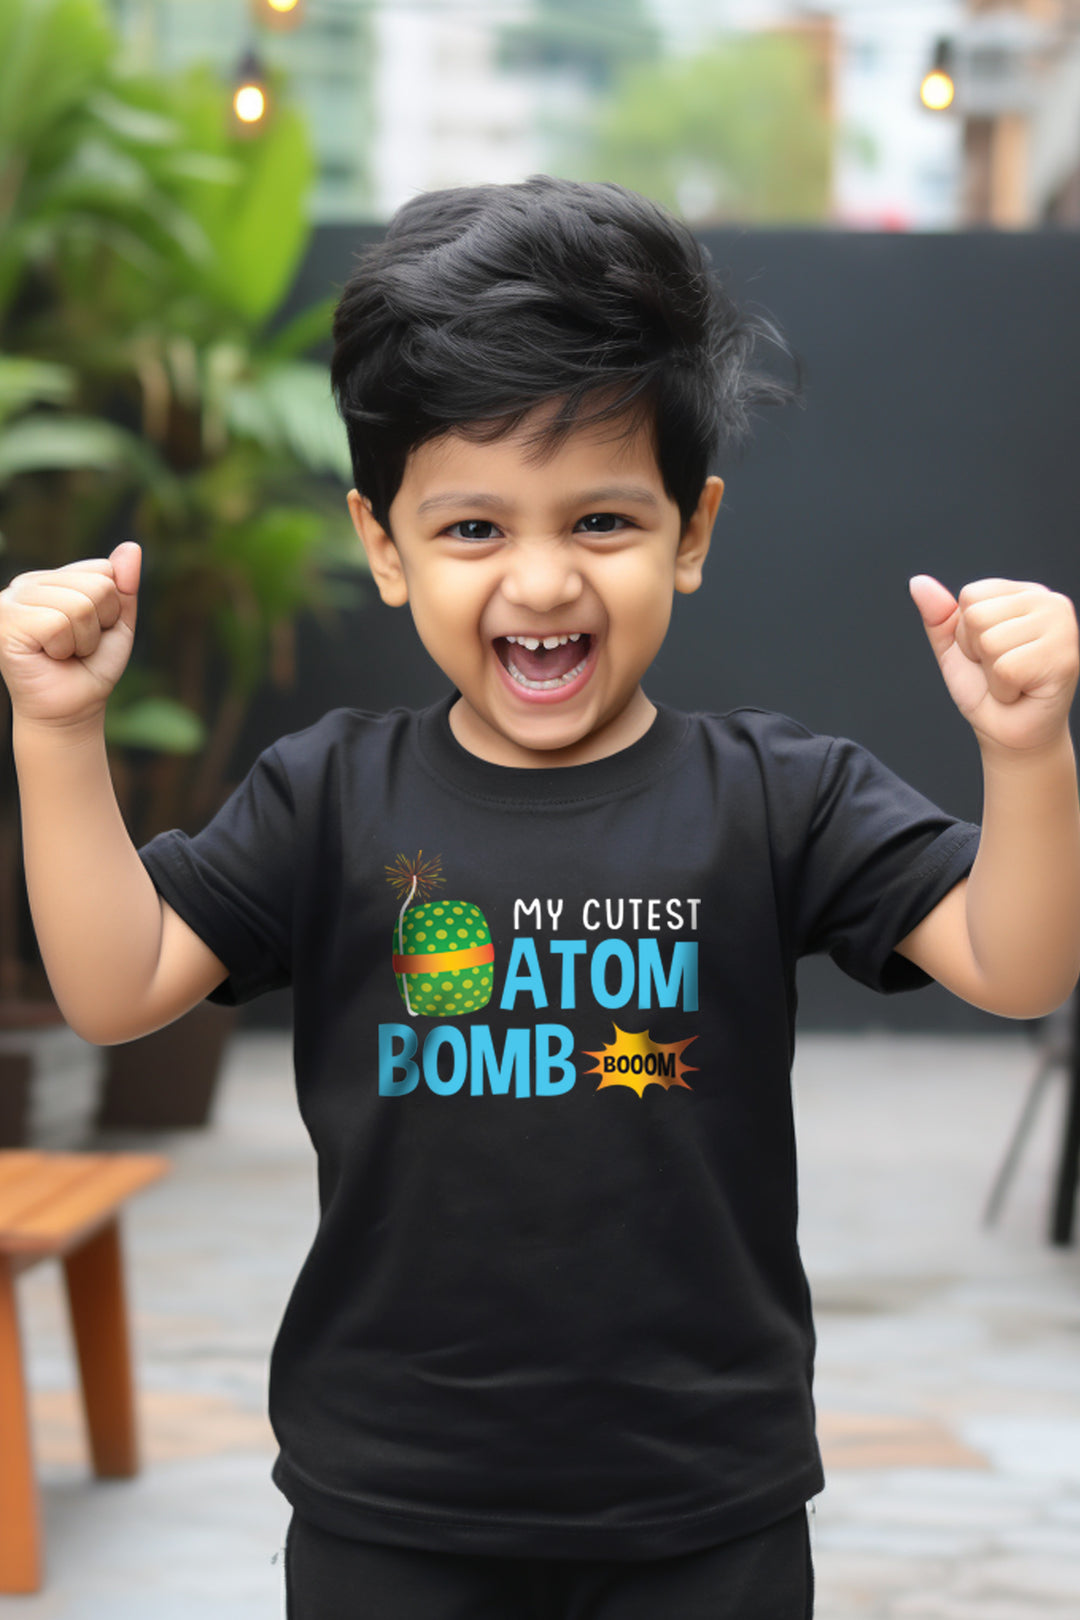 My Cutest Atom Bomb Kids T Shirt